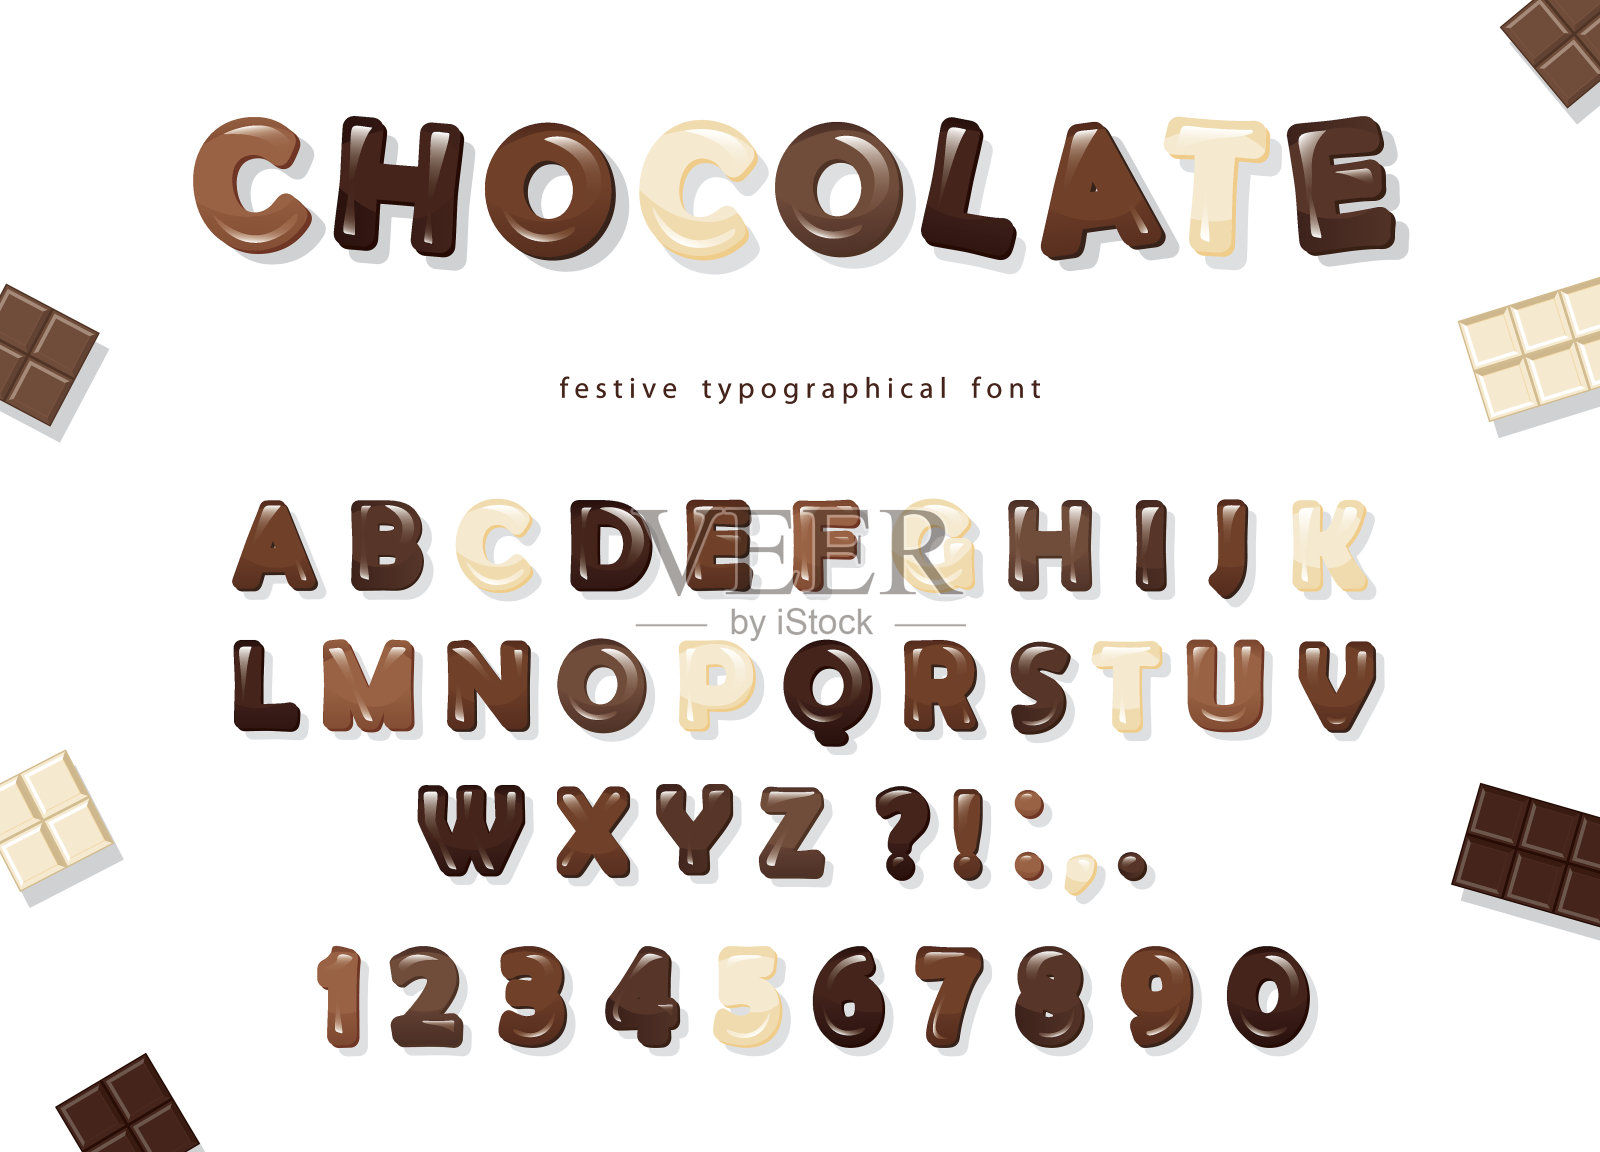 光滑的ABC字母和数字，由不同种类的巧克力制成——黑巧克力、牛奶巧克力和白巧克力。甜蜜的字体设计。插画图片素材